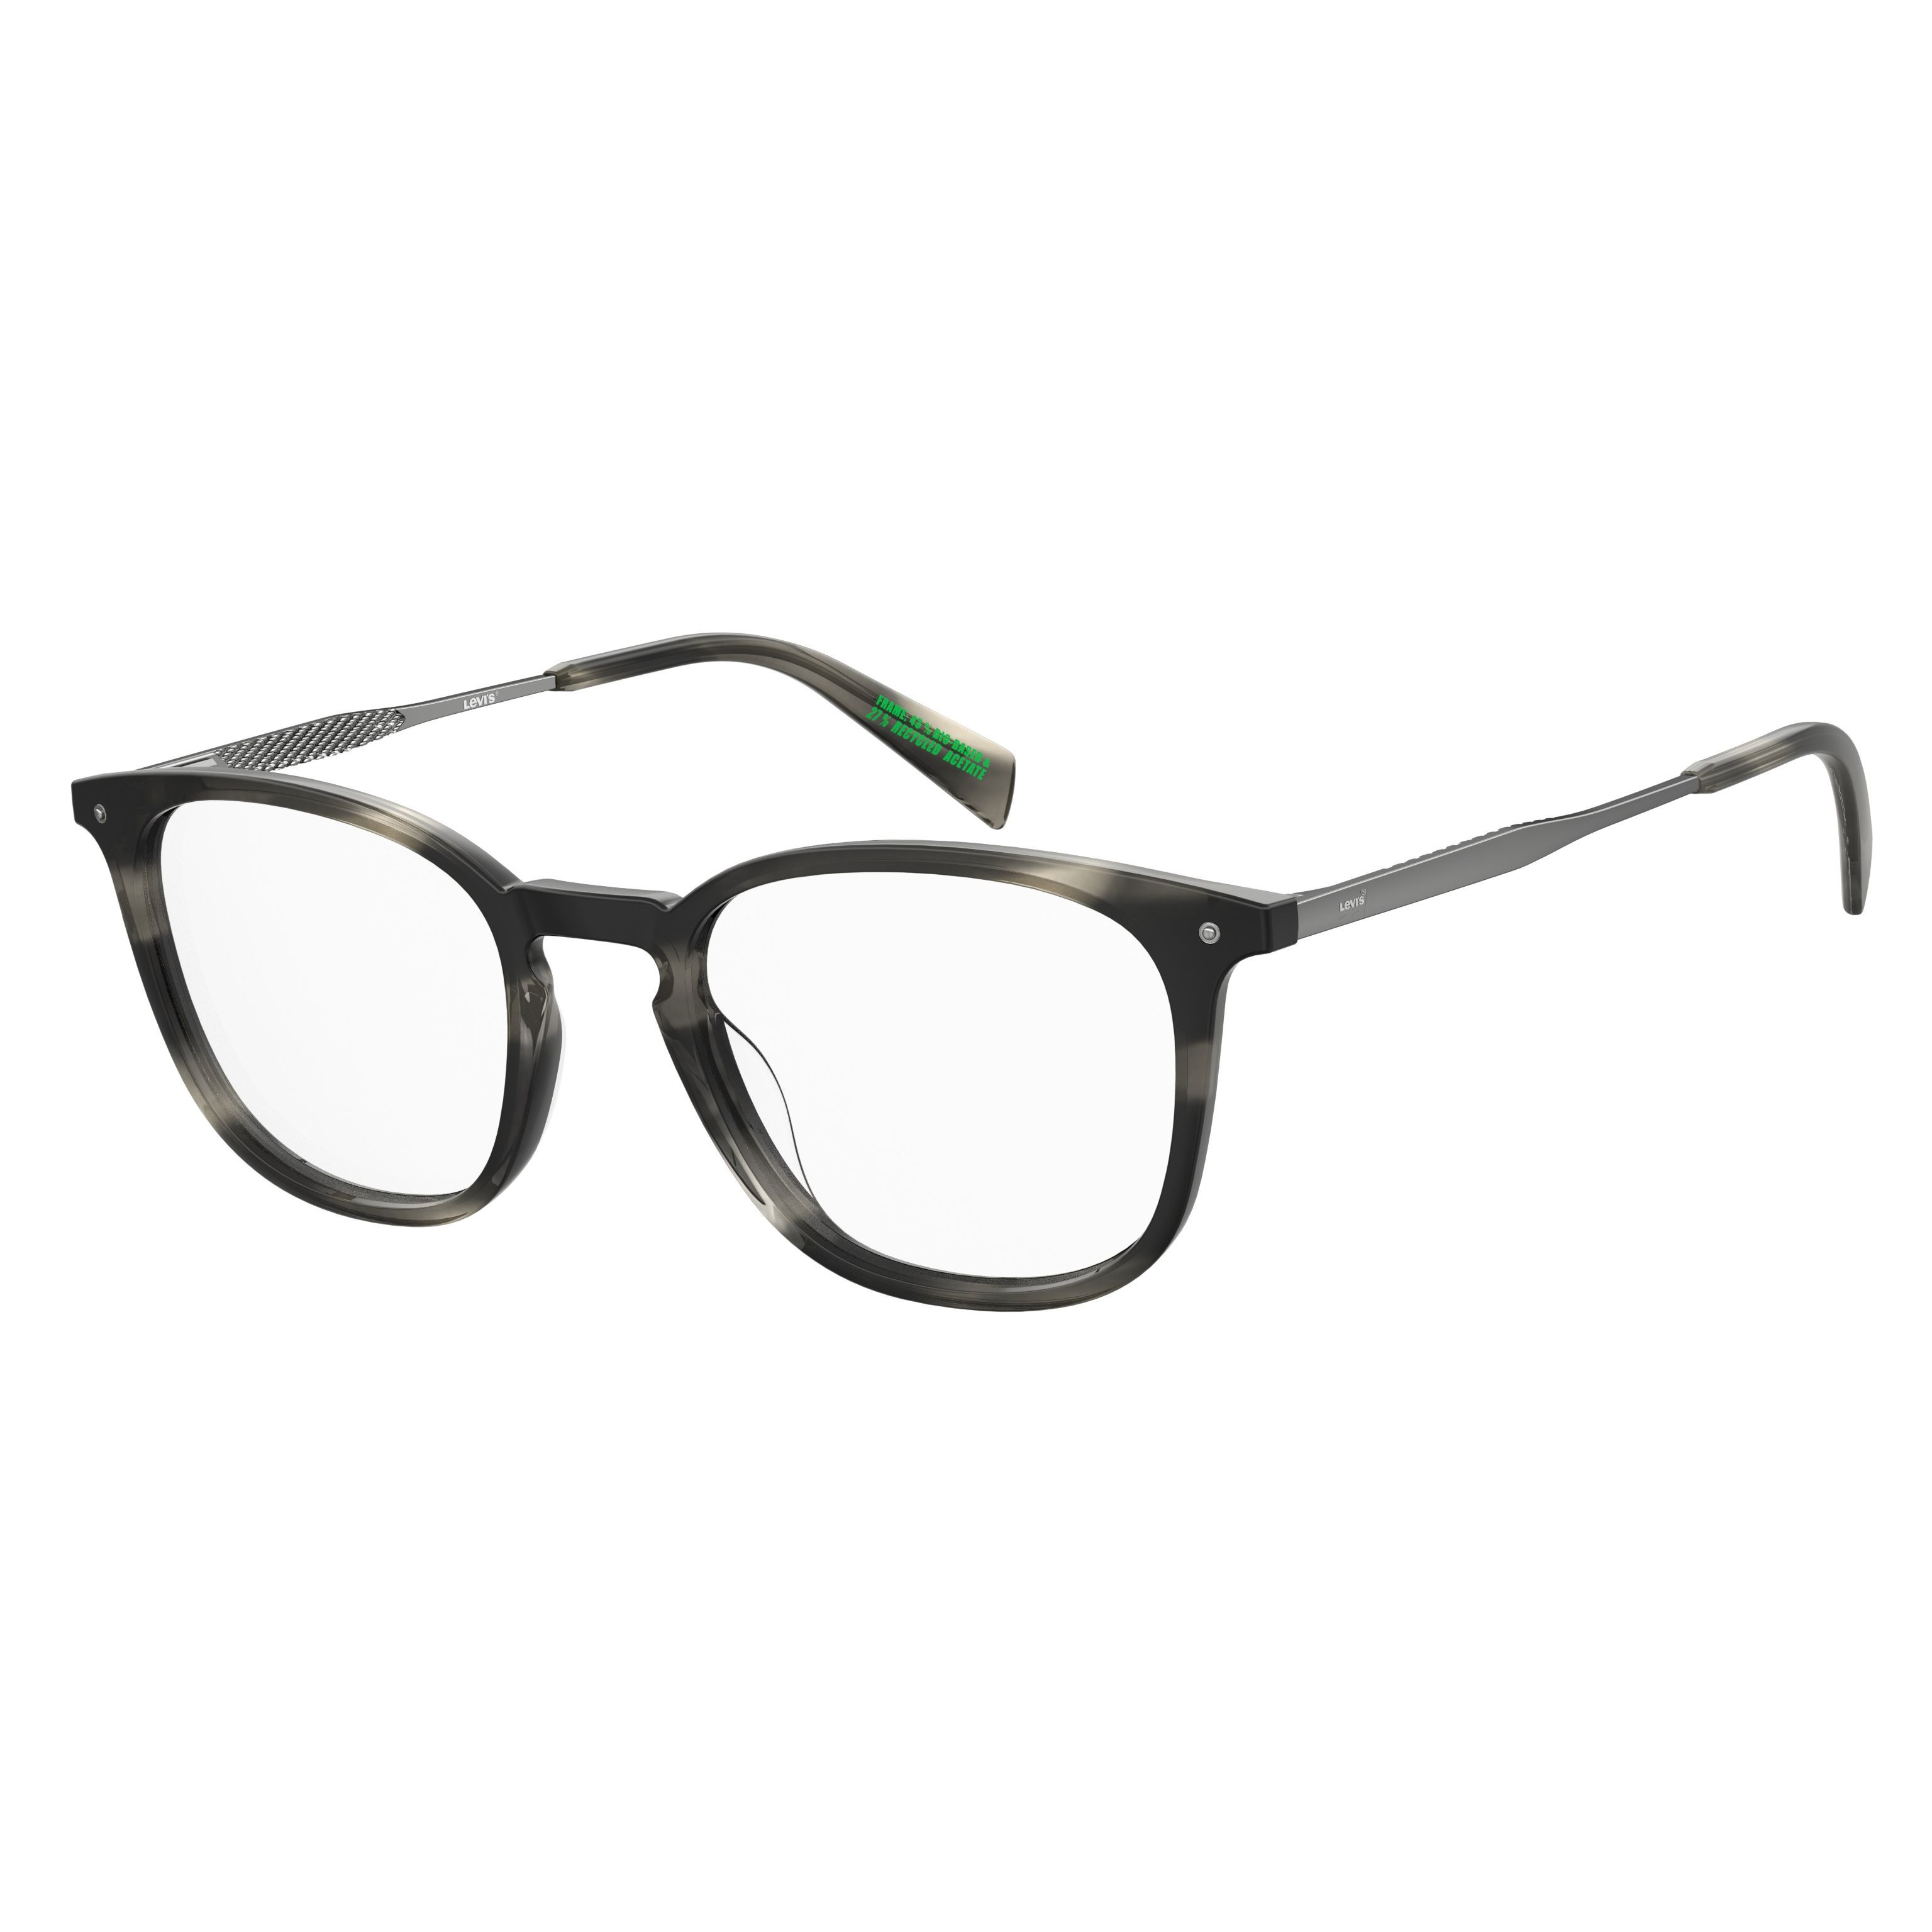 LV 5056 Pillow Eyeglasses 2W8 - size 51